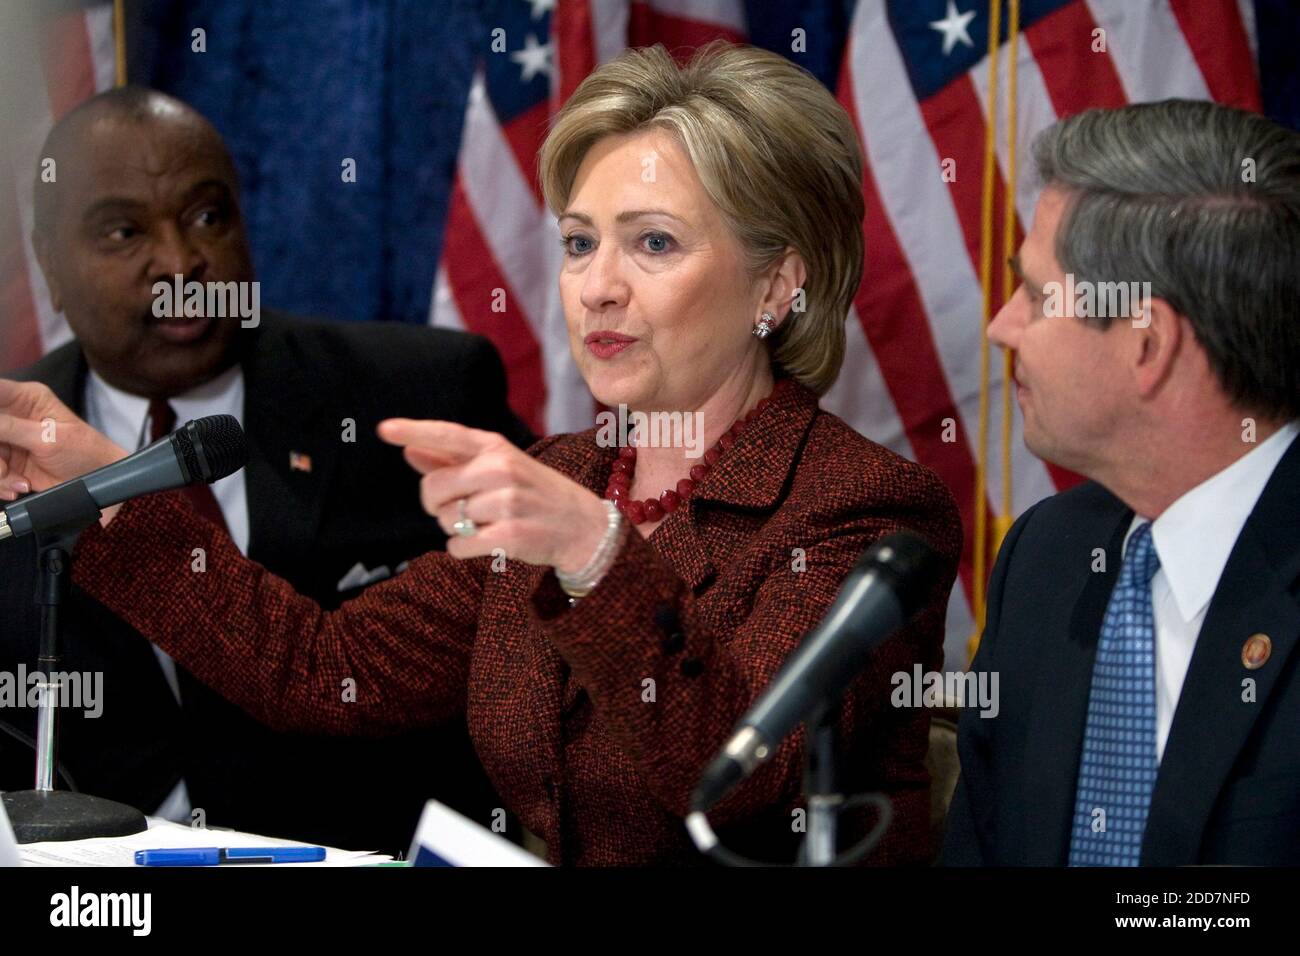 Il candidato presidenziale democratico Hillary Clinton partecipa a una conferenza stampa con ufficiali militari a Washington DC, USA, il 6 marzo 2008. Foto di Chuck Kennedy/MCT/ABACAPRESS.COM Foto Stock